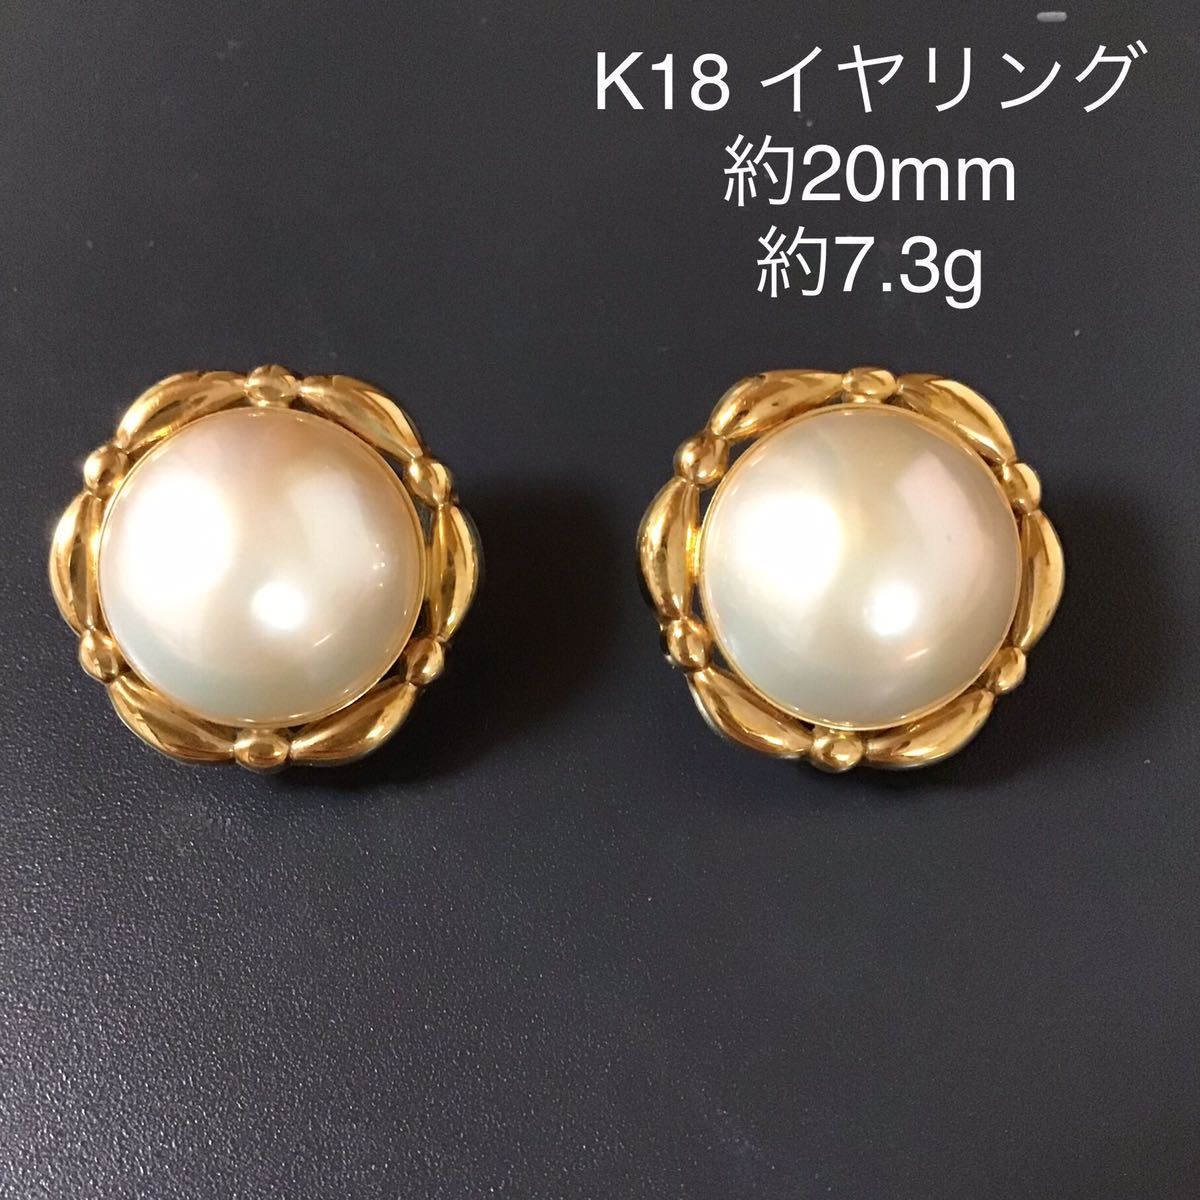 K18 マベパール イヤリング /約20mm 約7.3g 刻印あり 半円真珠 vsv